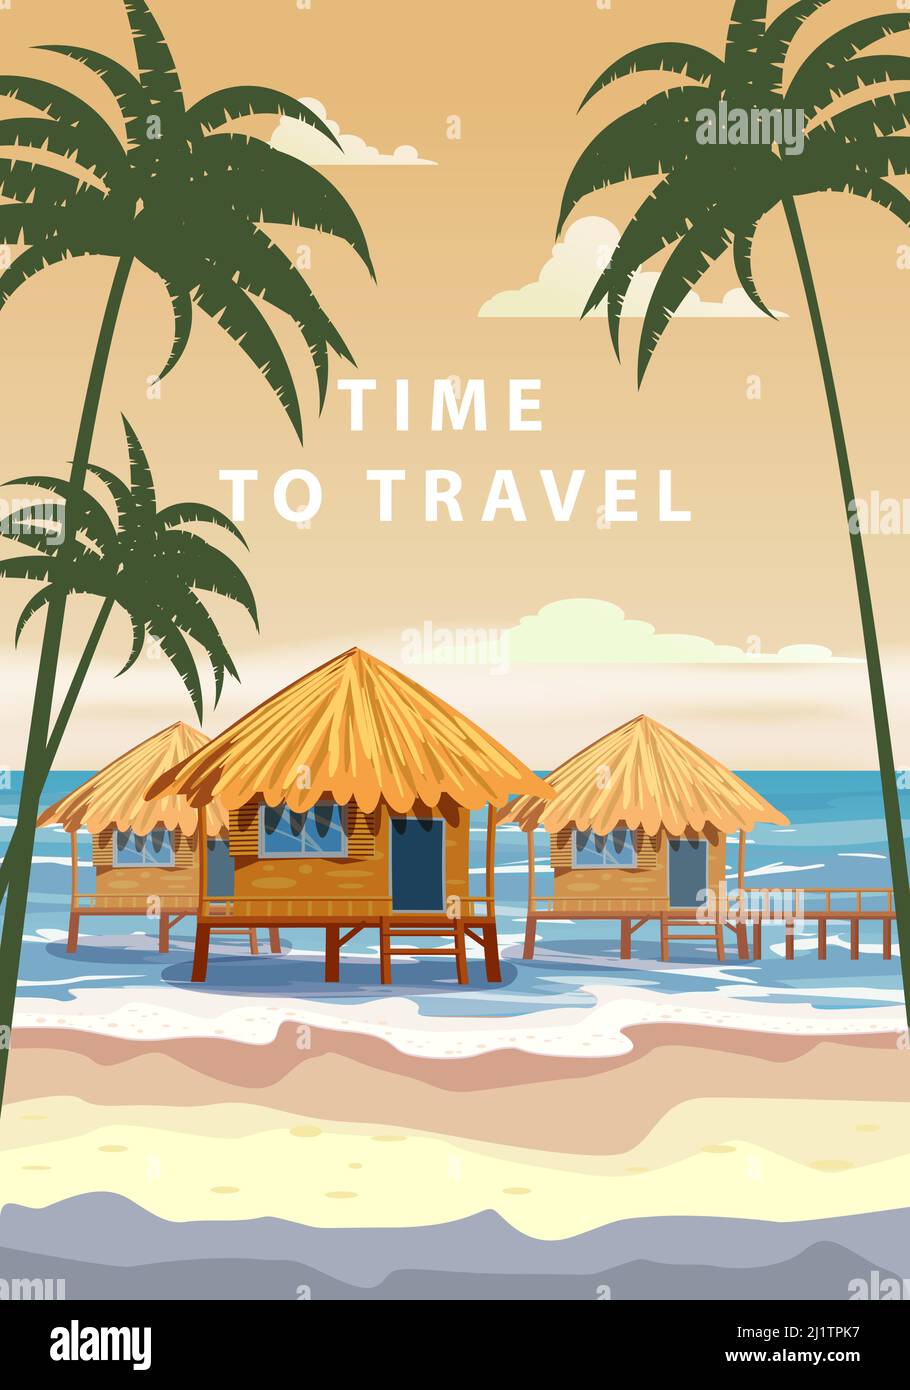 È il momento di viaggiare. Poster resort tropicale vintage. Spiaggia costa capanne tradizionali, palme, oceano. Vettore di illustrazione stile retrò Illustrazione Vettoriale